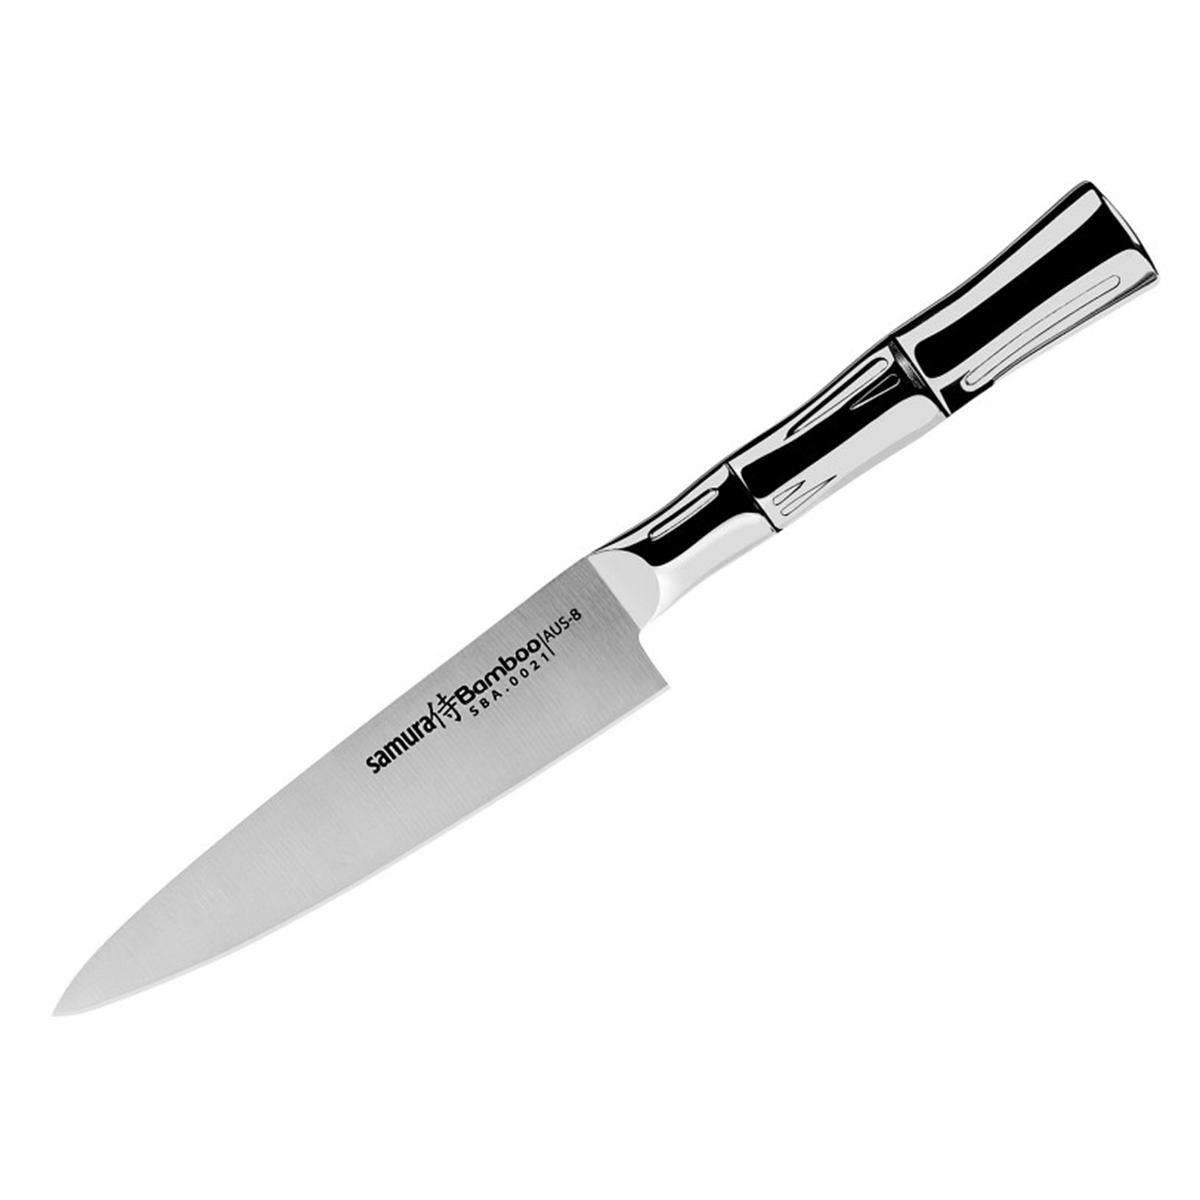 Μαχαίρι γενικής χρήσης 12.5cm, BAMBOO - SAMURA®️